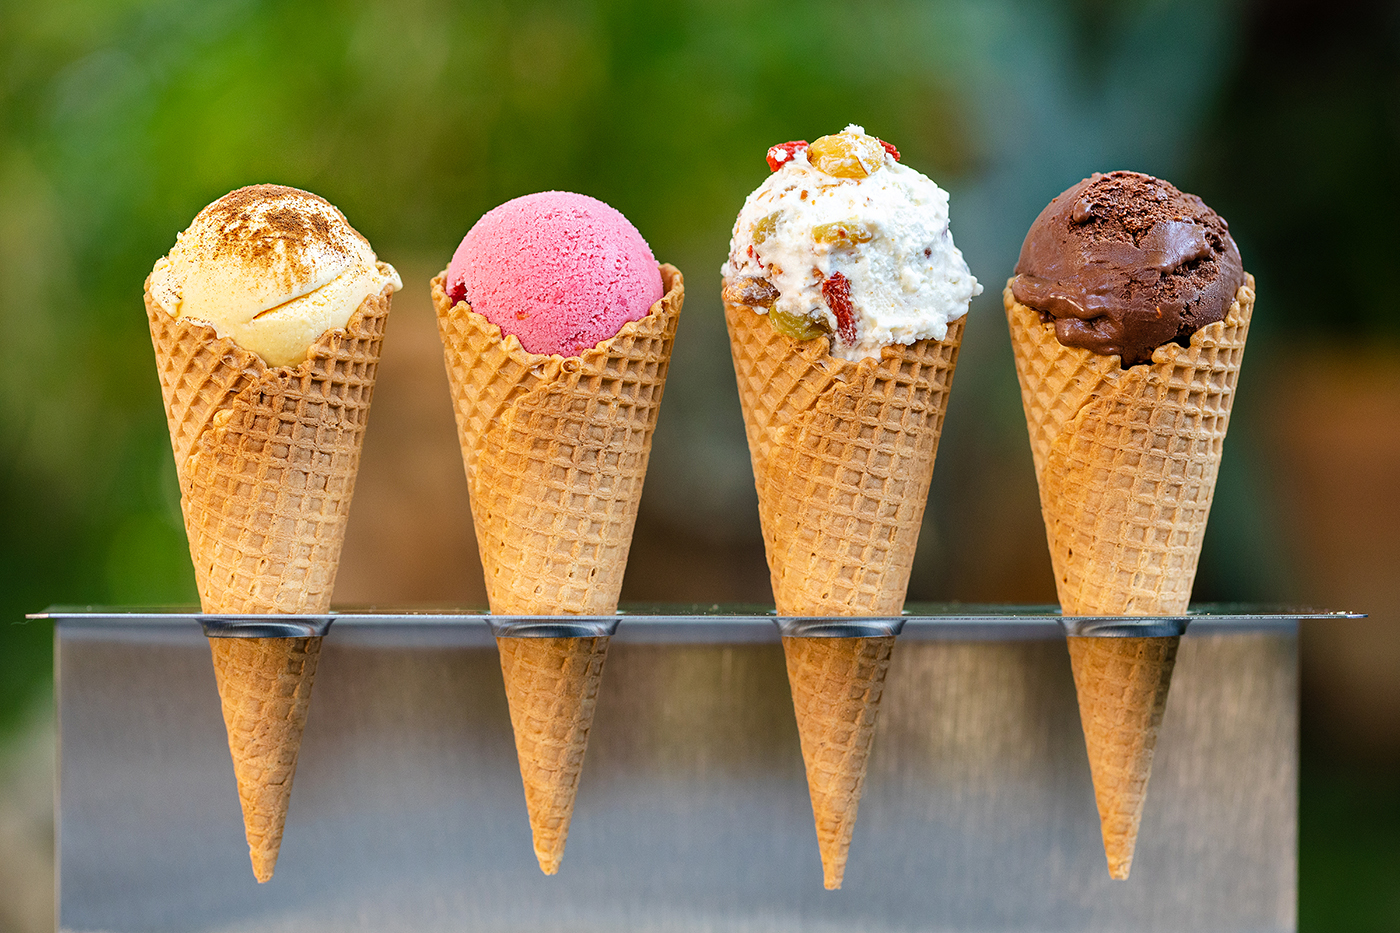 Cafeaua înghețată cu înghețată. Cafea cu înghețată (glace): istorie, rețete și secrete de gătit